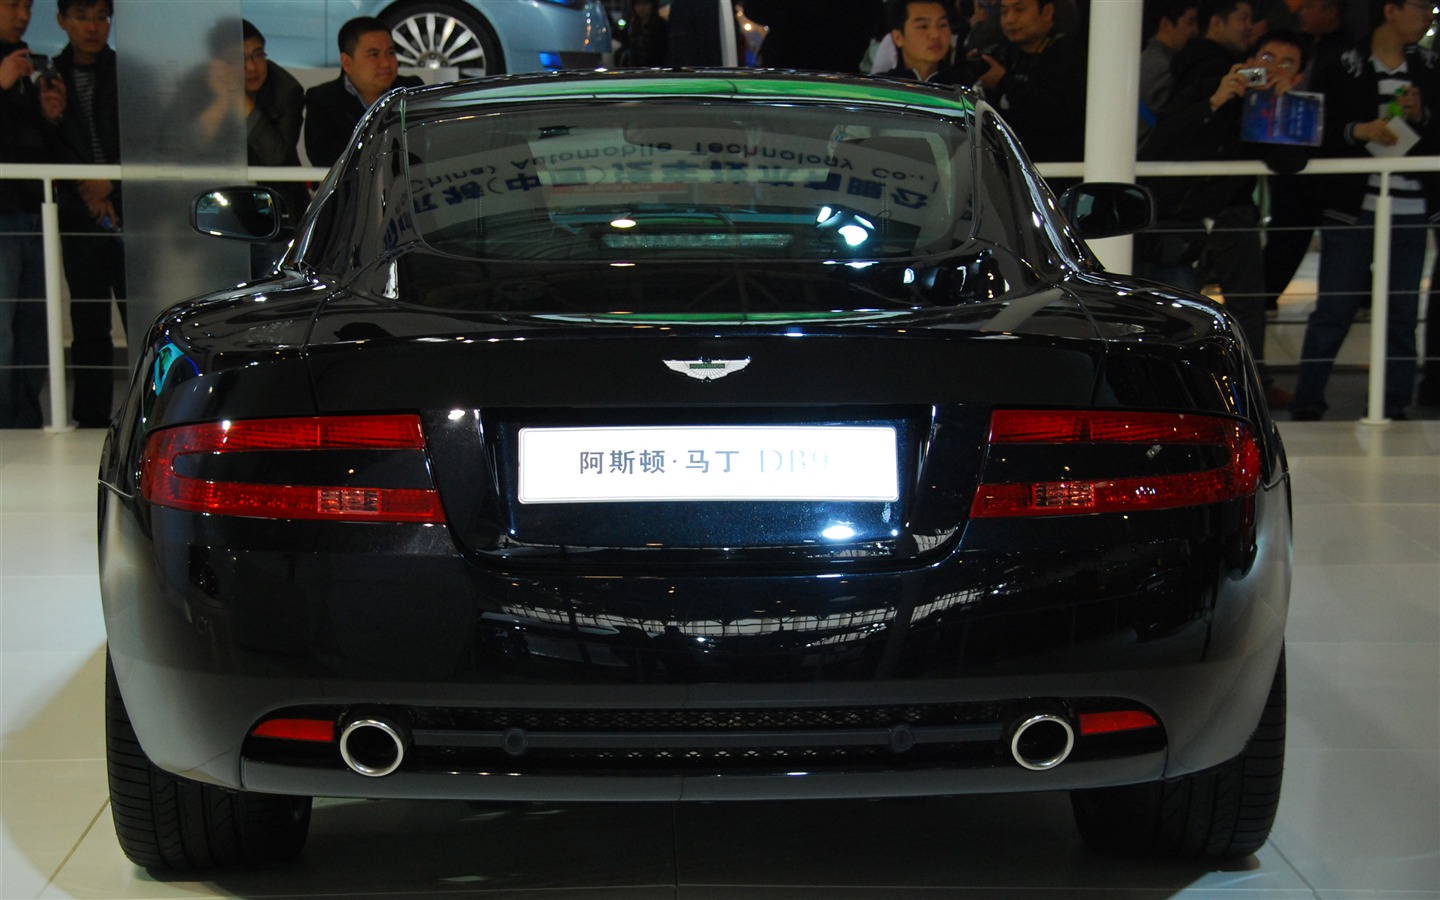 2010北京国际车展(一) (z321x123作品)30 - 1440x900